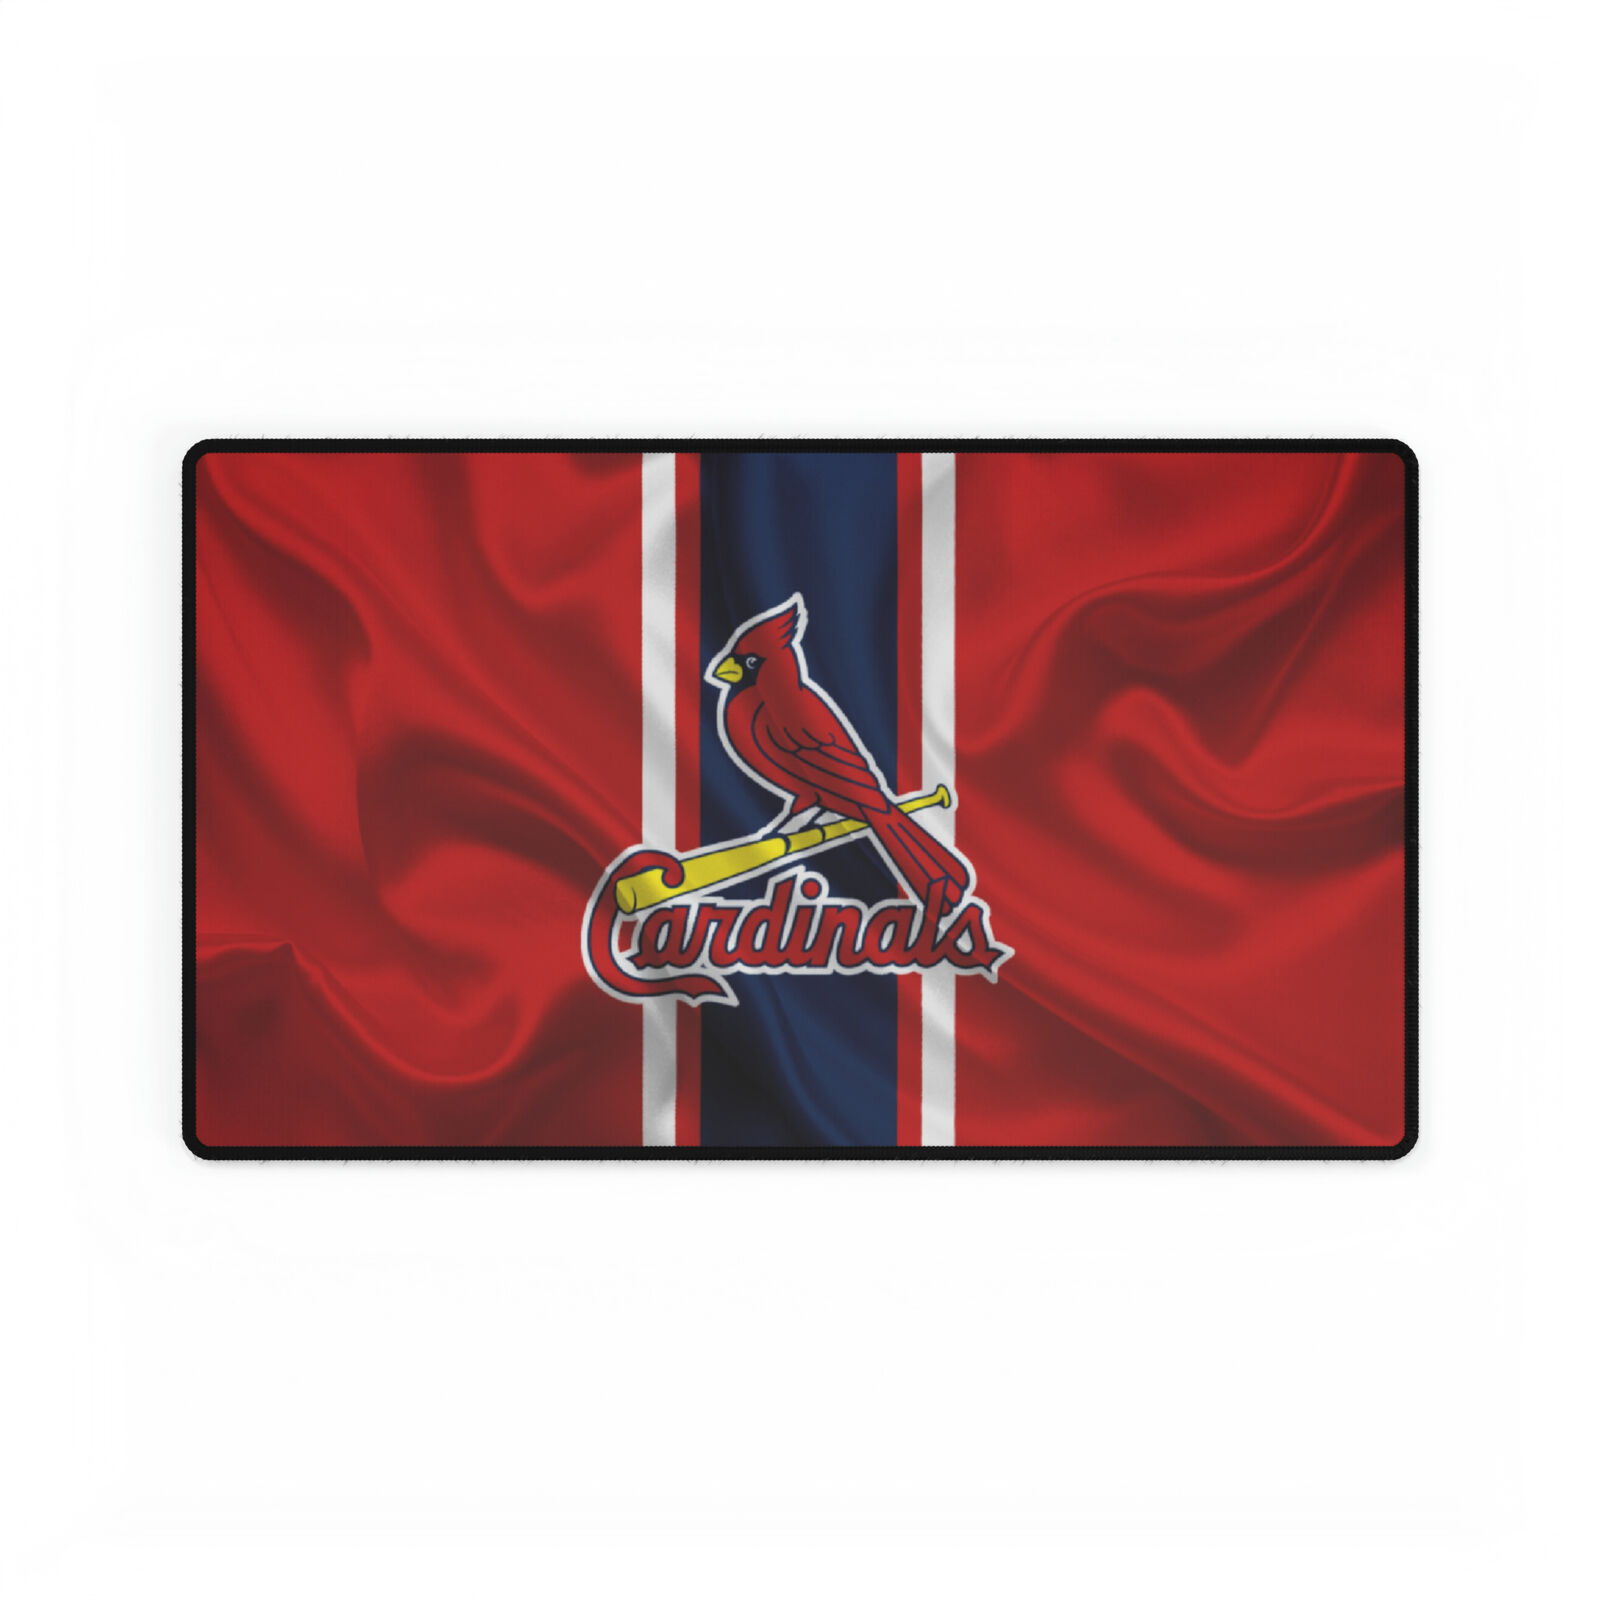 St. Louis Cardinals Wavy flag MLB Baseball High Definition Desk Mat mousepad